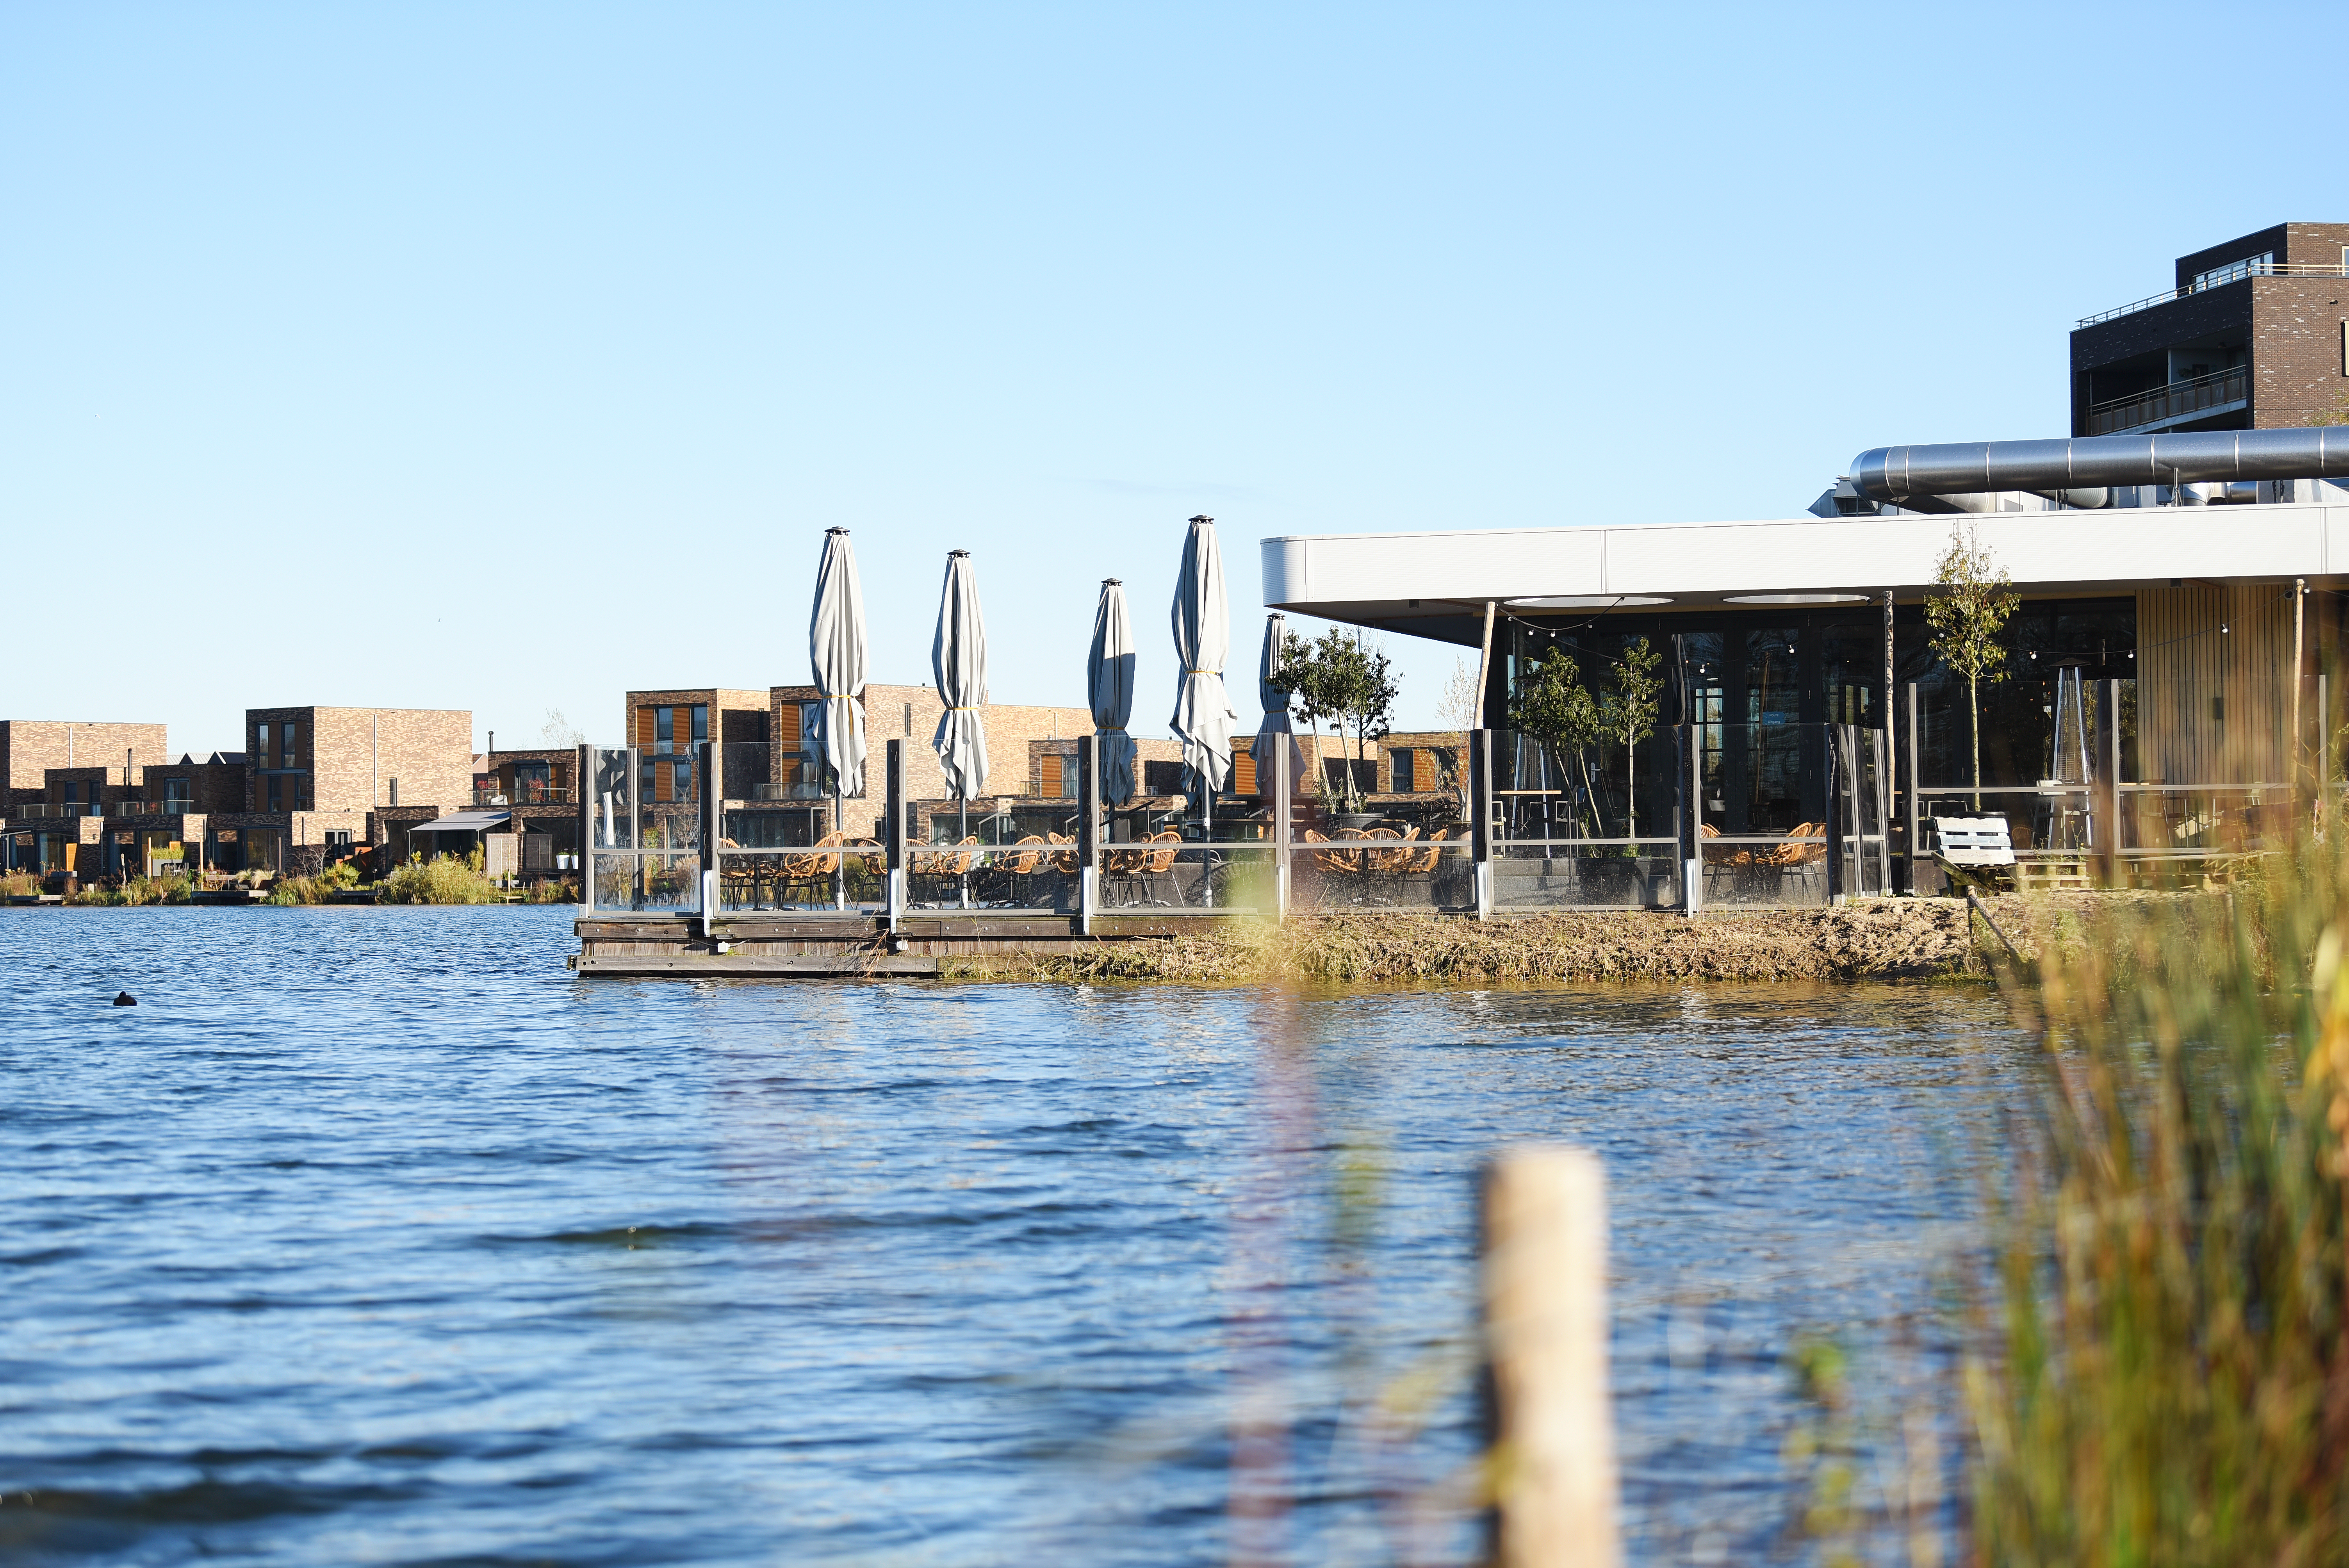 Fortvier - Een restaurant in de omgeving die aan het water ligt.